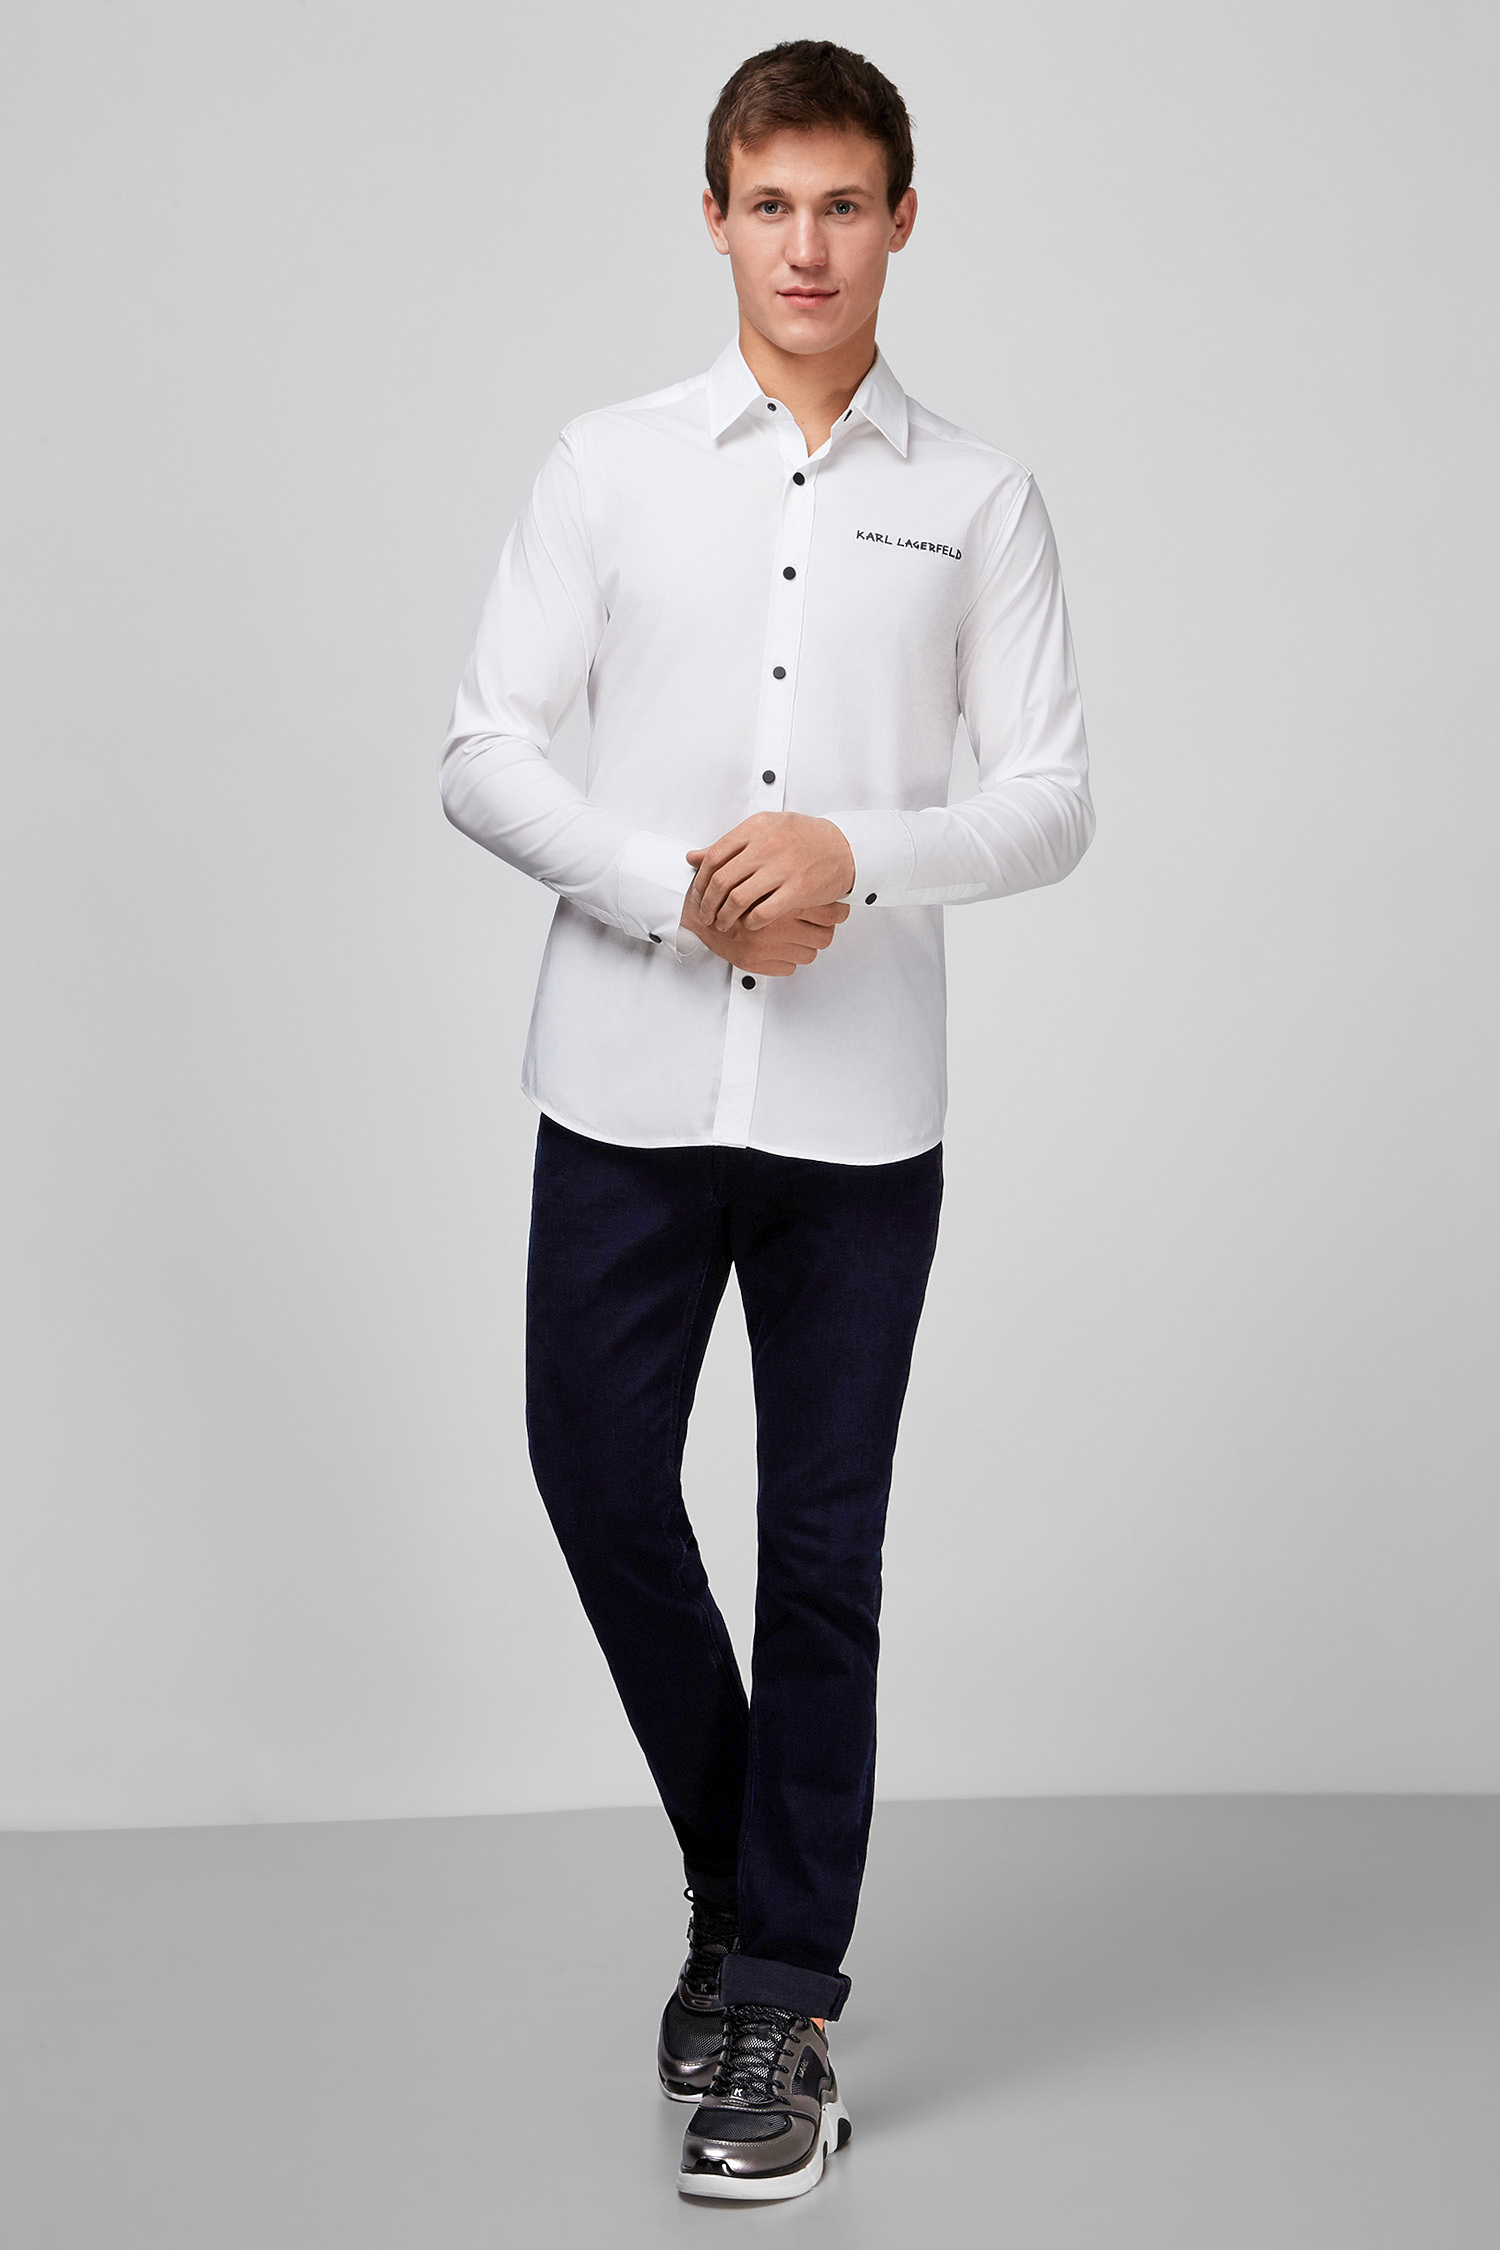 Чоловіча біла сорочка Karl Lagerfeld 502600.605911;10